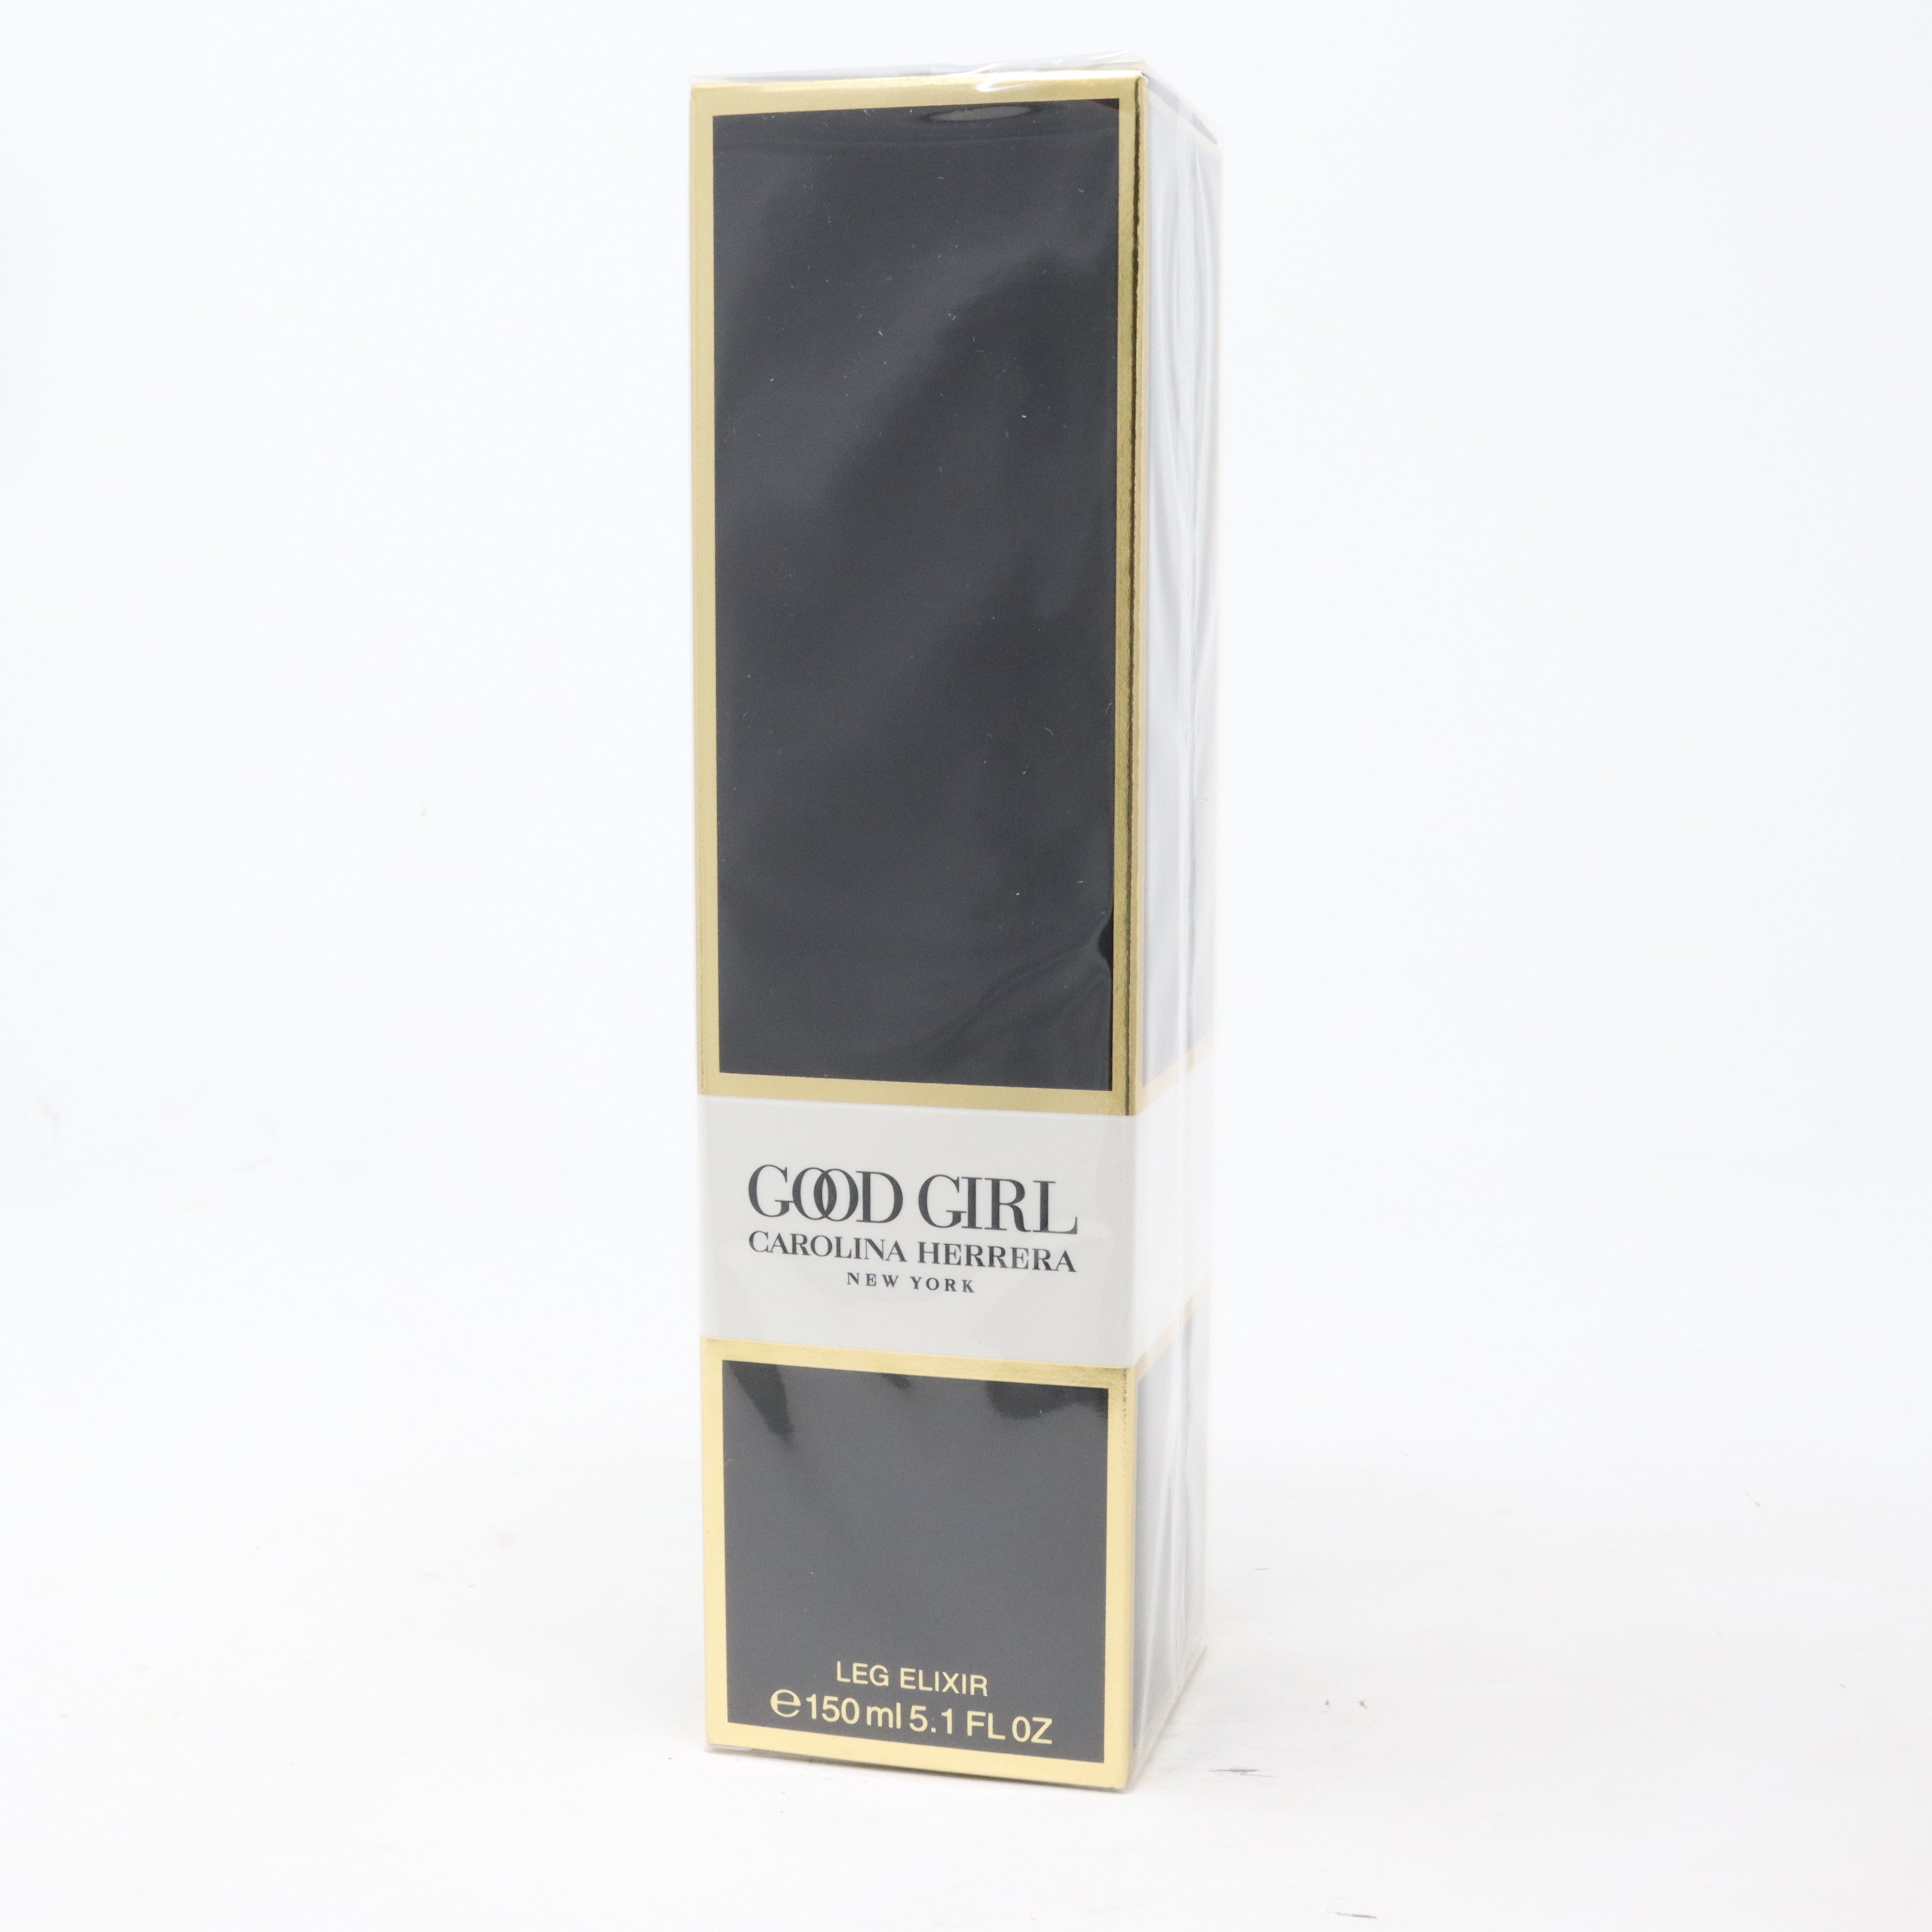 Carolina Herrera Good Girl Eau de Parfum 150ml (5.1fl oz)